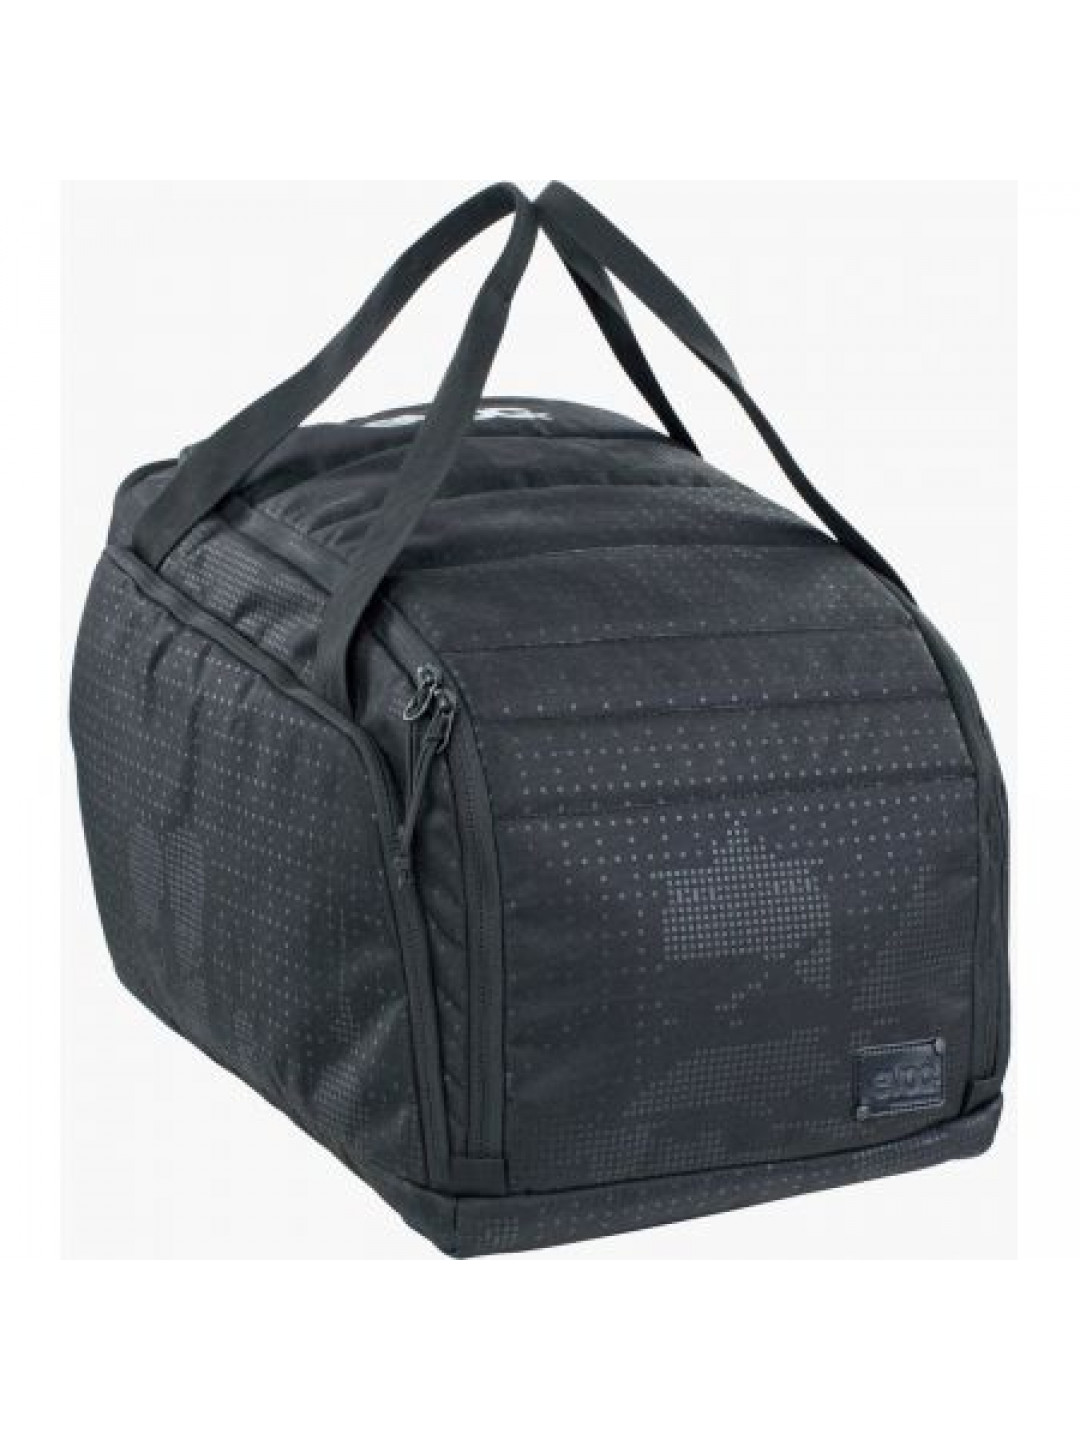 Batoh Evoc Gear Bag 35 – Černá – 35L